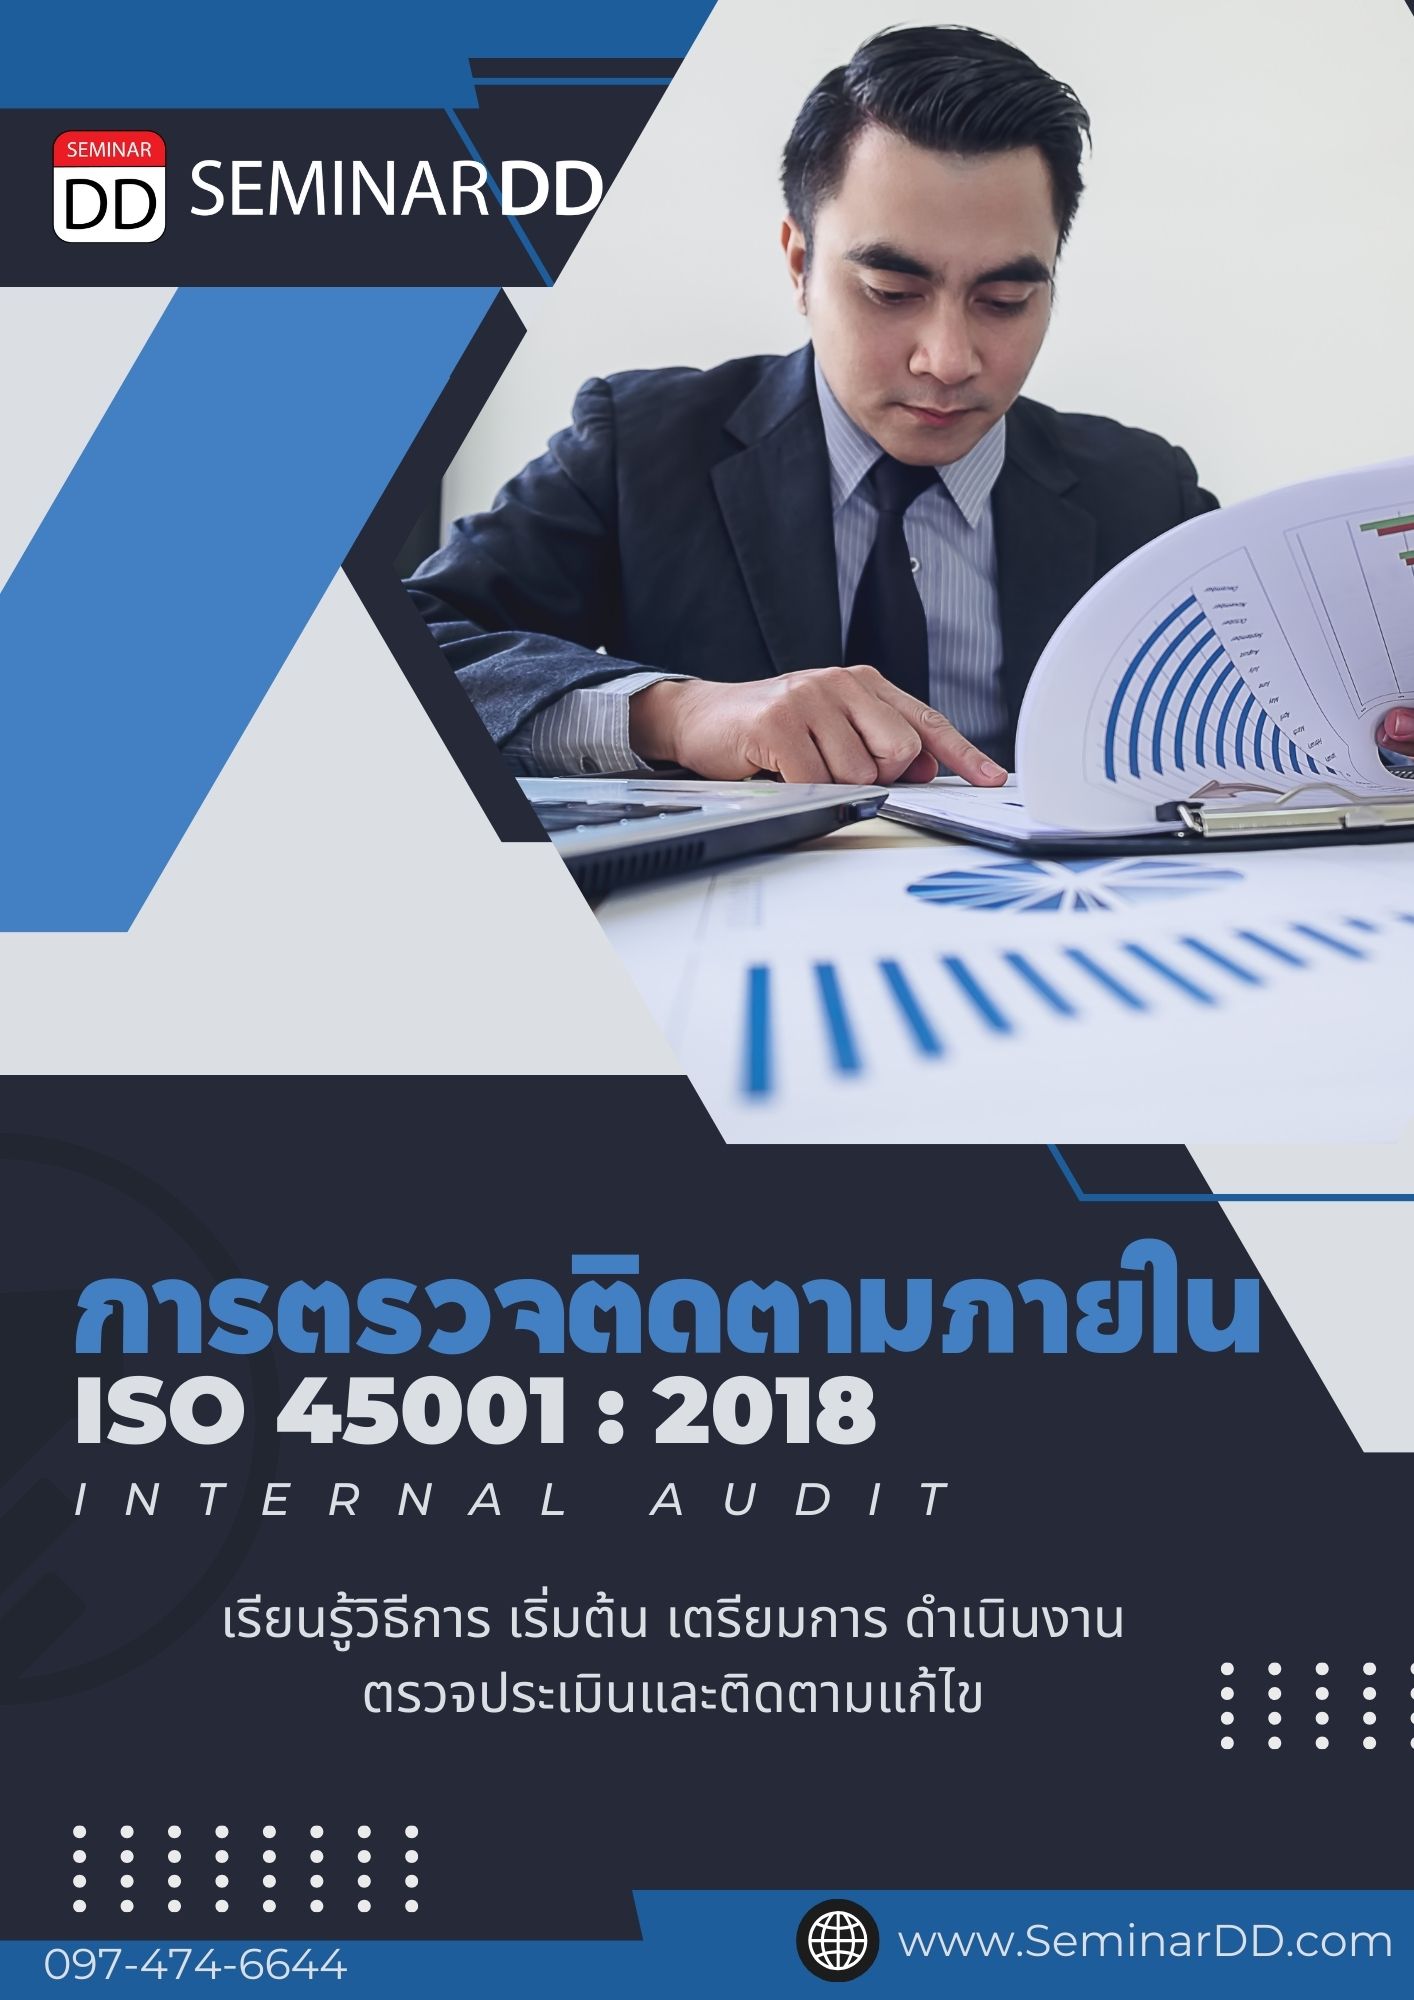 หลักสูตรอบรม การตรวจติดตามภายใน ISO 45001:2018 (Internal Audit ISO 45001:2018)